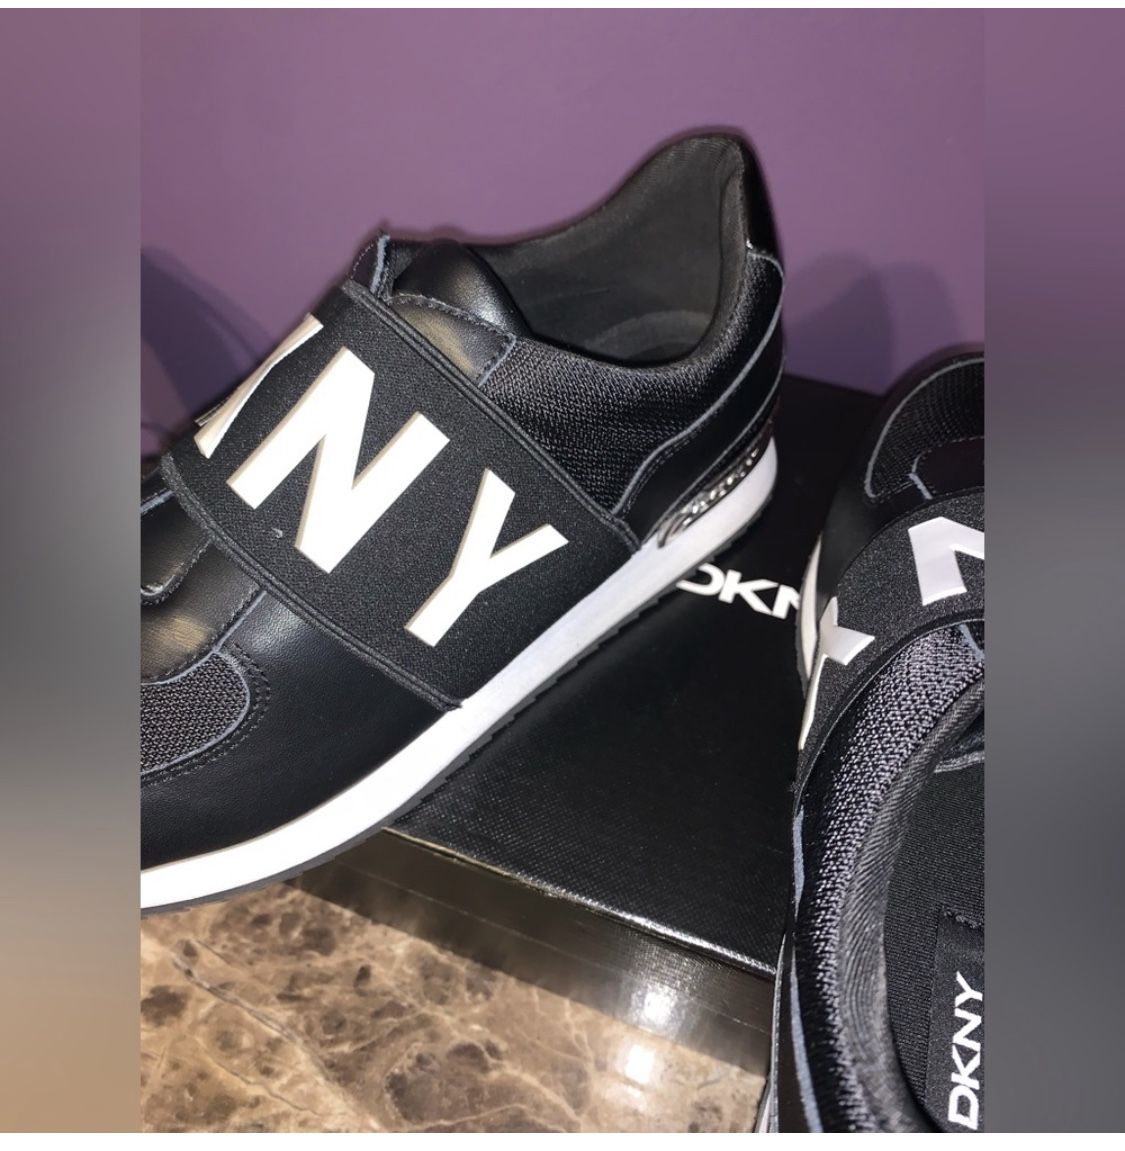 Serena stå efterskrift DKNY Marli Slip-on Sneakers for Sale in Belleville, MI - OfferUp